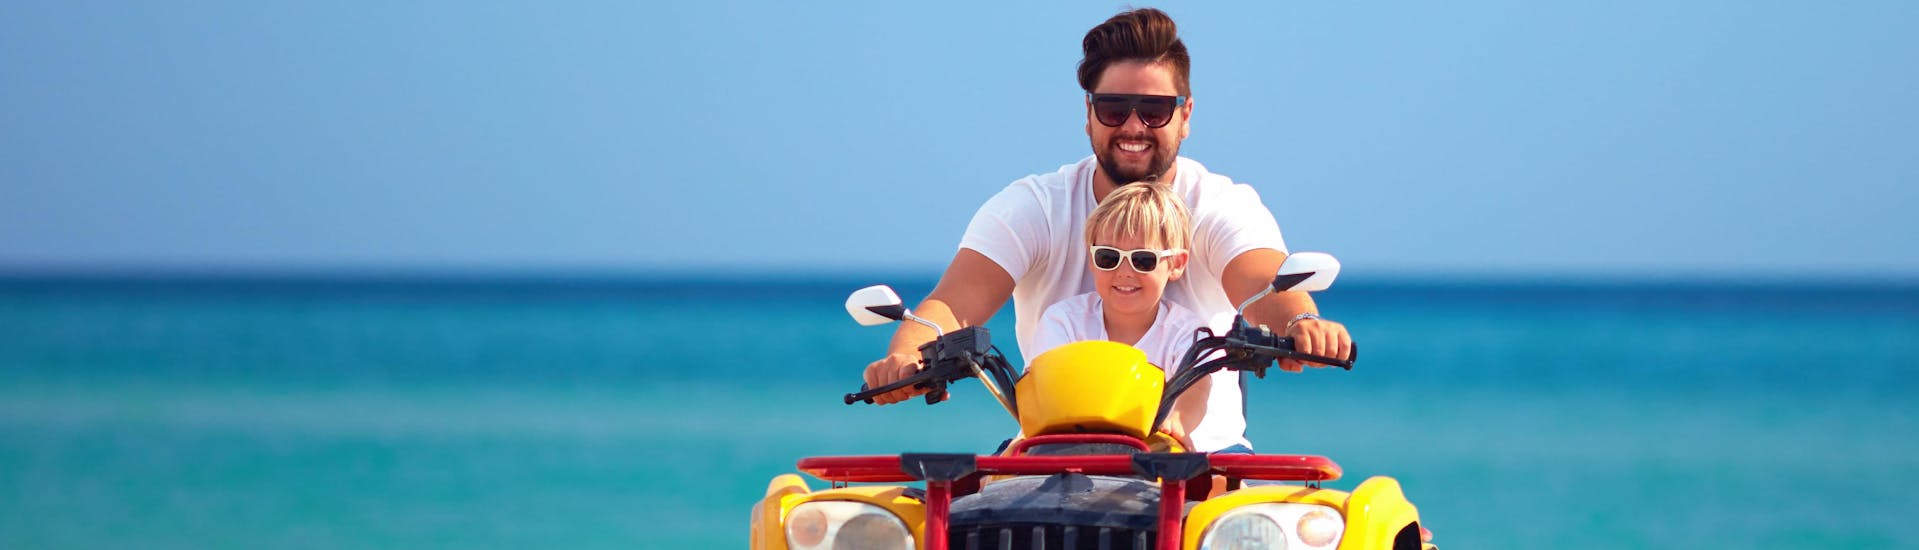 Griekenland: Een vader rijdt tijdens de vakantie met zijn zoon op een quad.